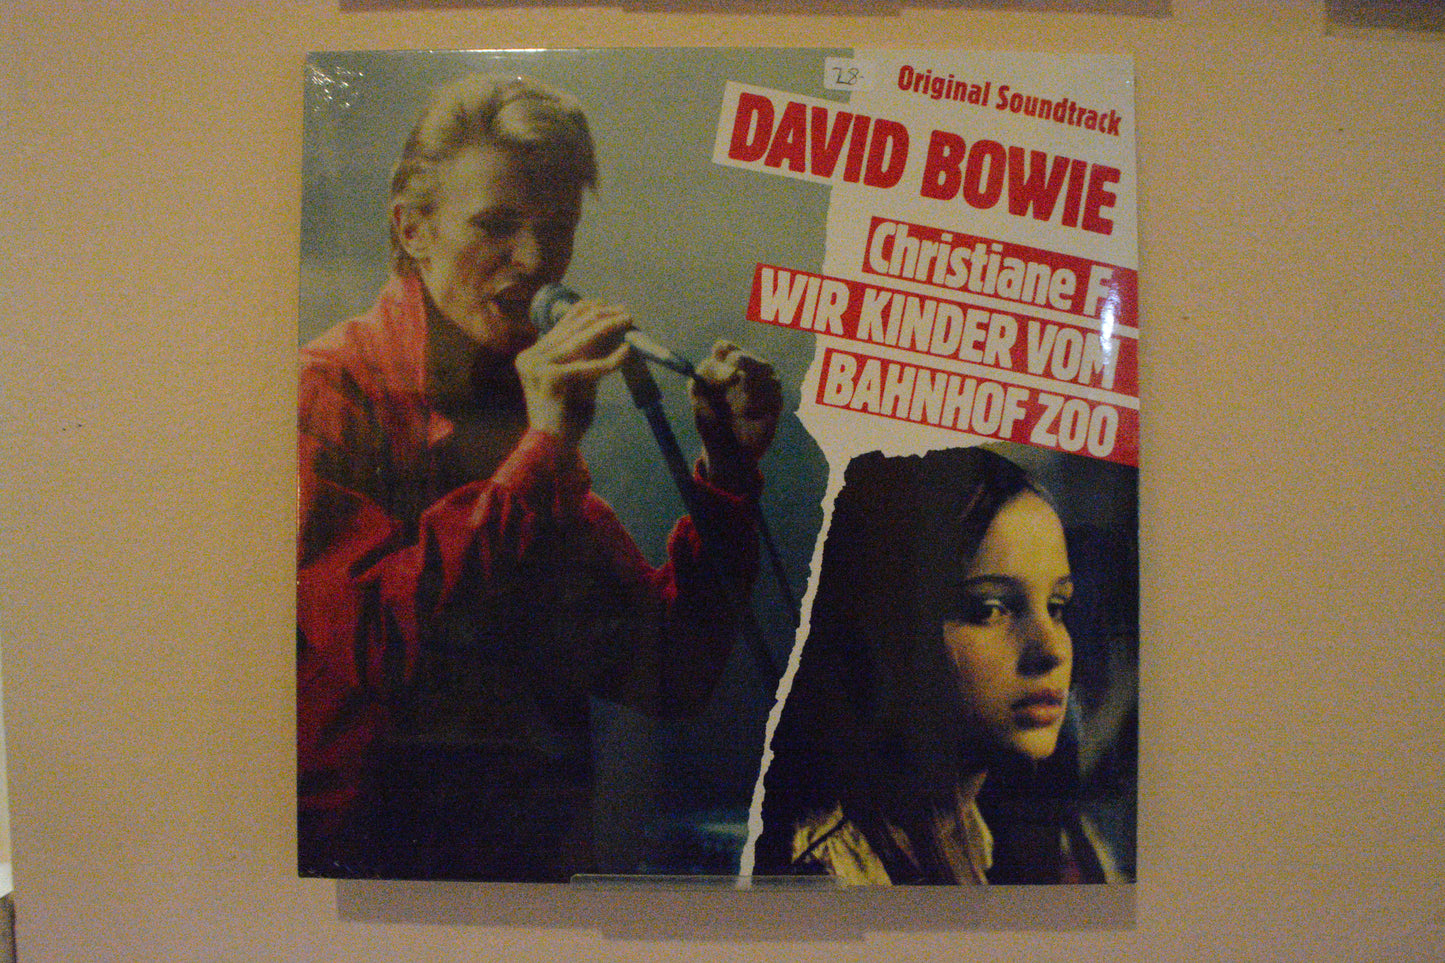 David Bowie - Christiane F: Wir Kinder vom Bahnhof Zoo LP